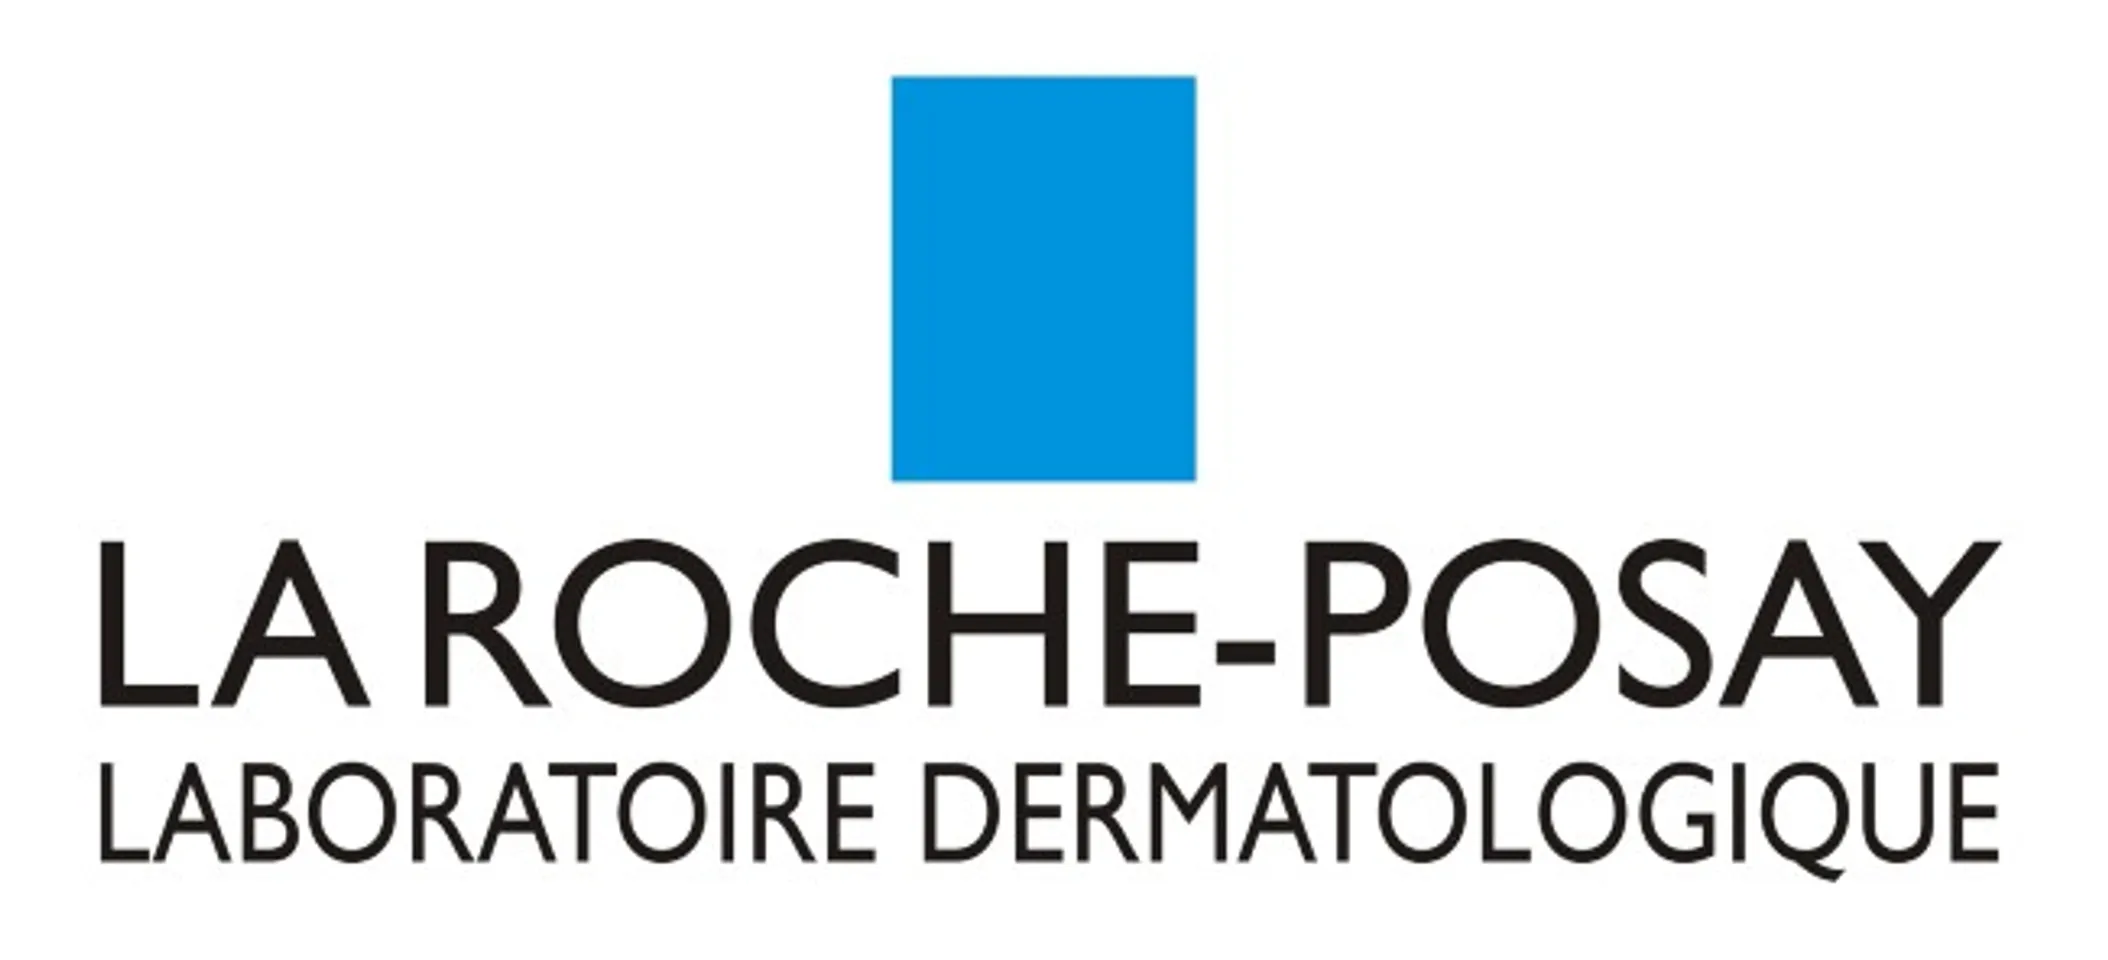 thương hiệu hóa mỹ phẩm La Roche Posay